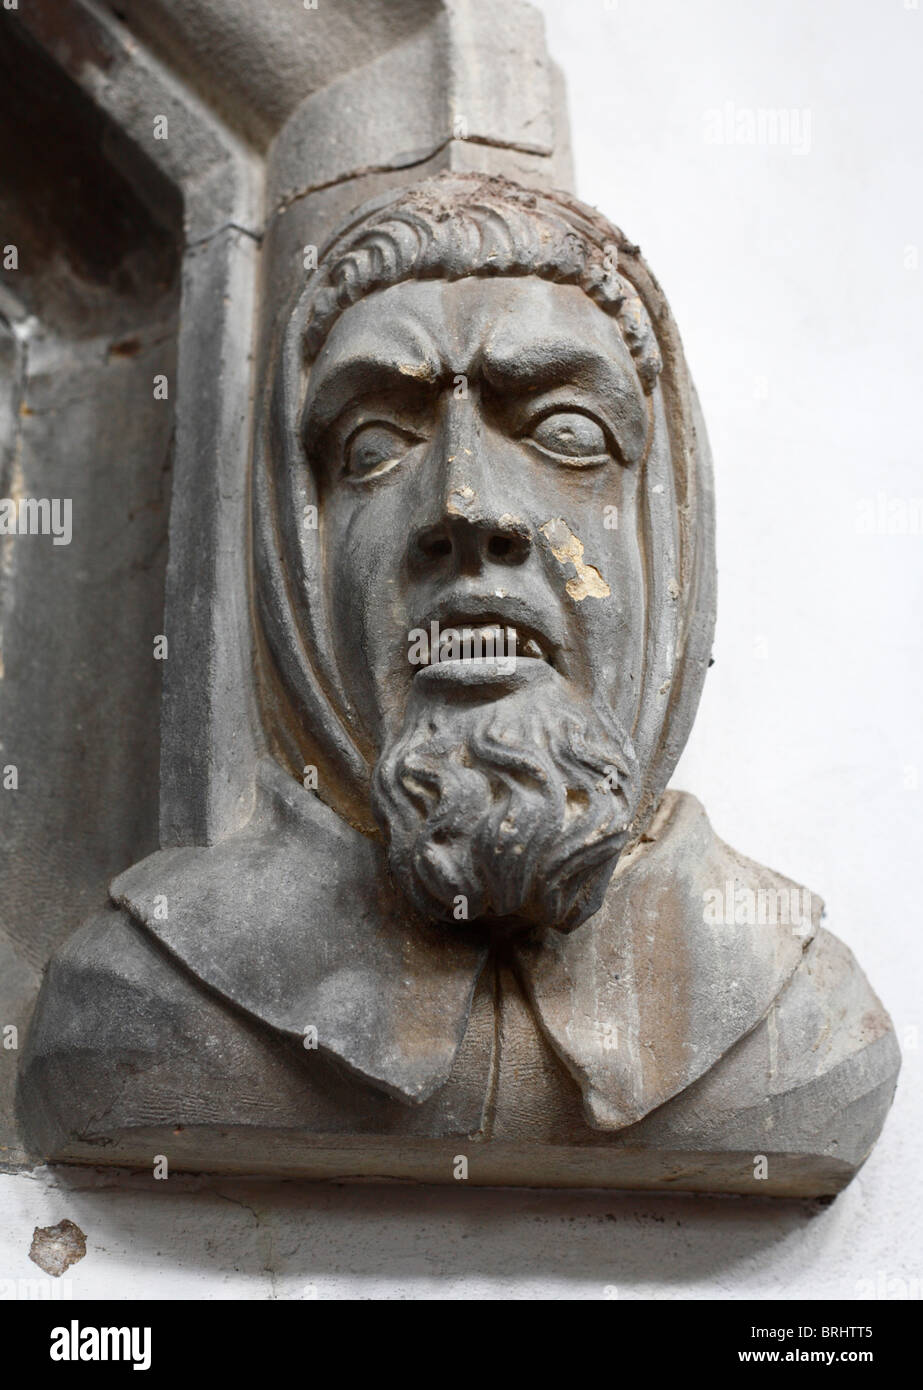 Ein geschnitzter Steinkopf im St.-Nikolaus-Kapelle, King's Lynn, Norfolk, England, mit einem gequälten Zeichenfolgenausdruck. Stockfoto